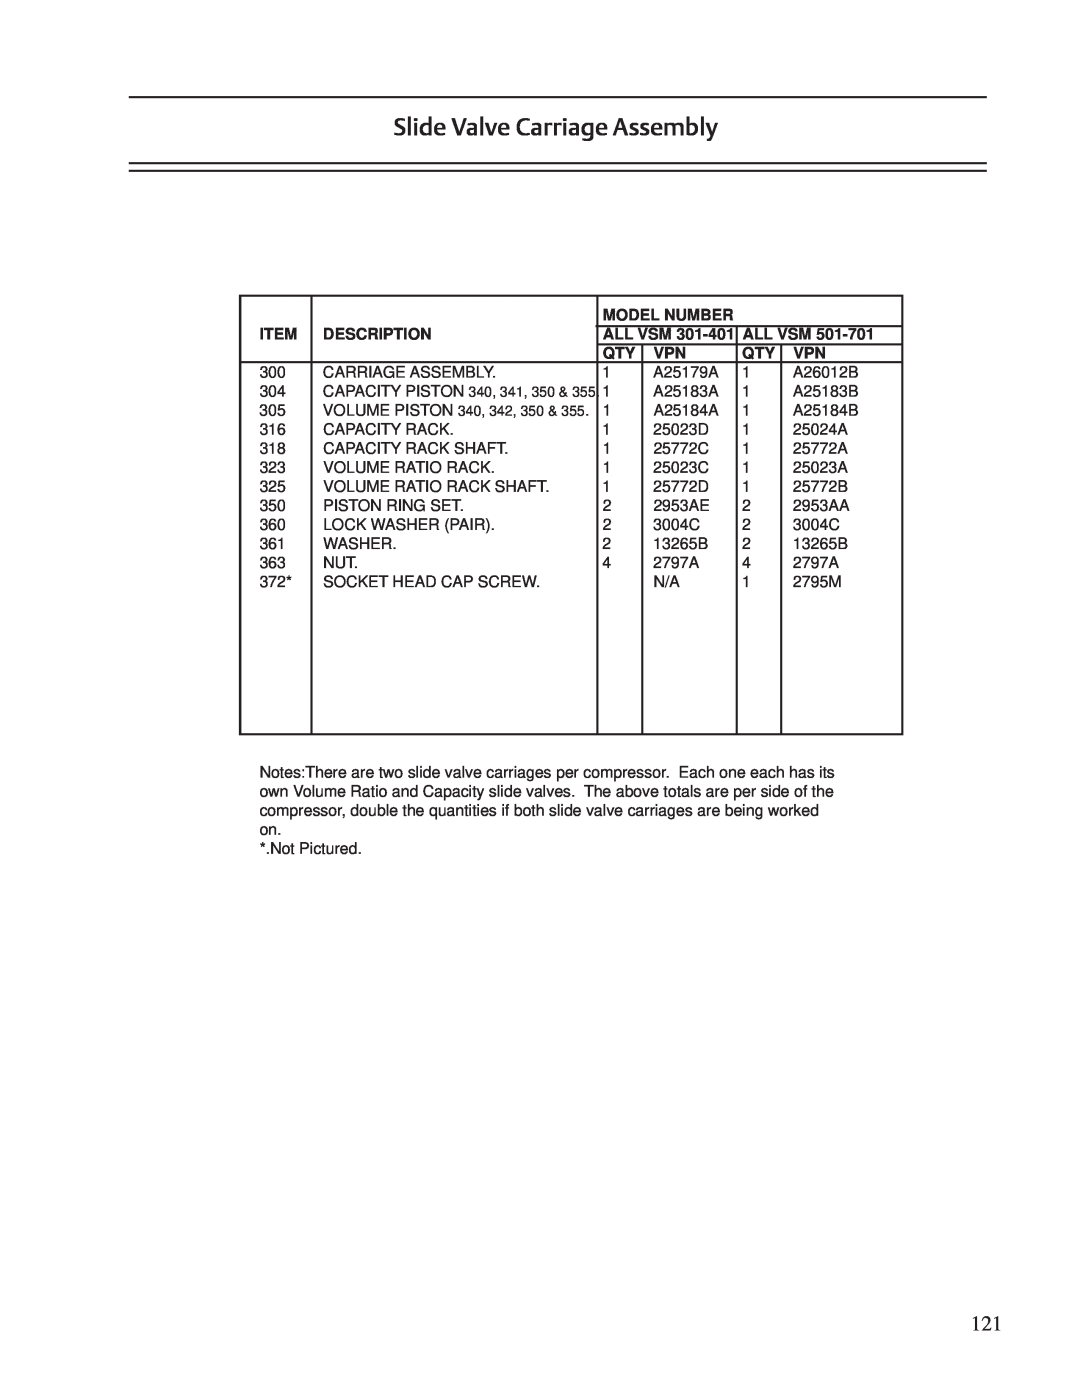 Emerson VSM, VSR, VSS service manual Slide Valve Carriage Assembly, Description, Model Number, All Vsm 